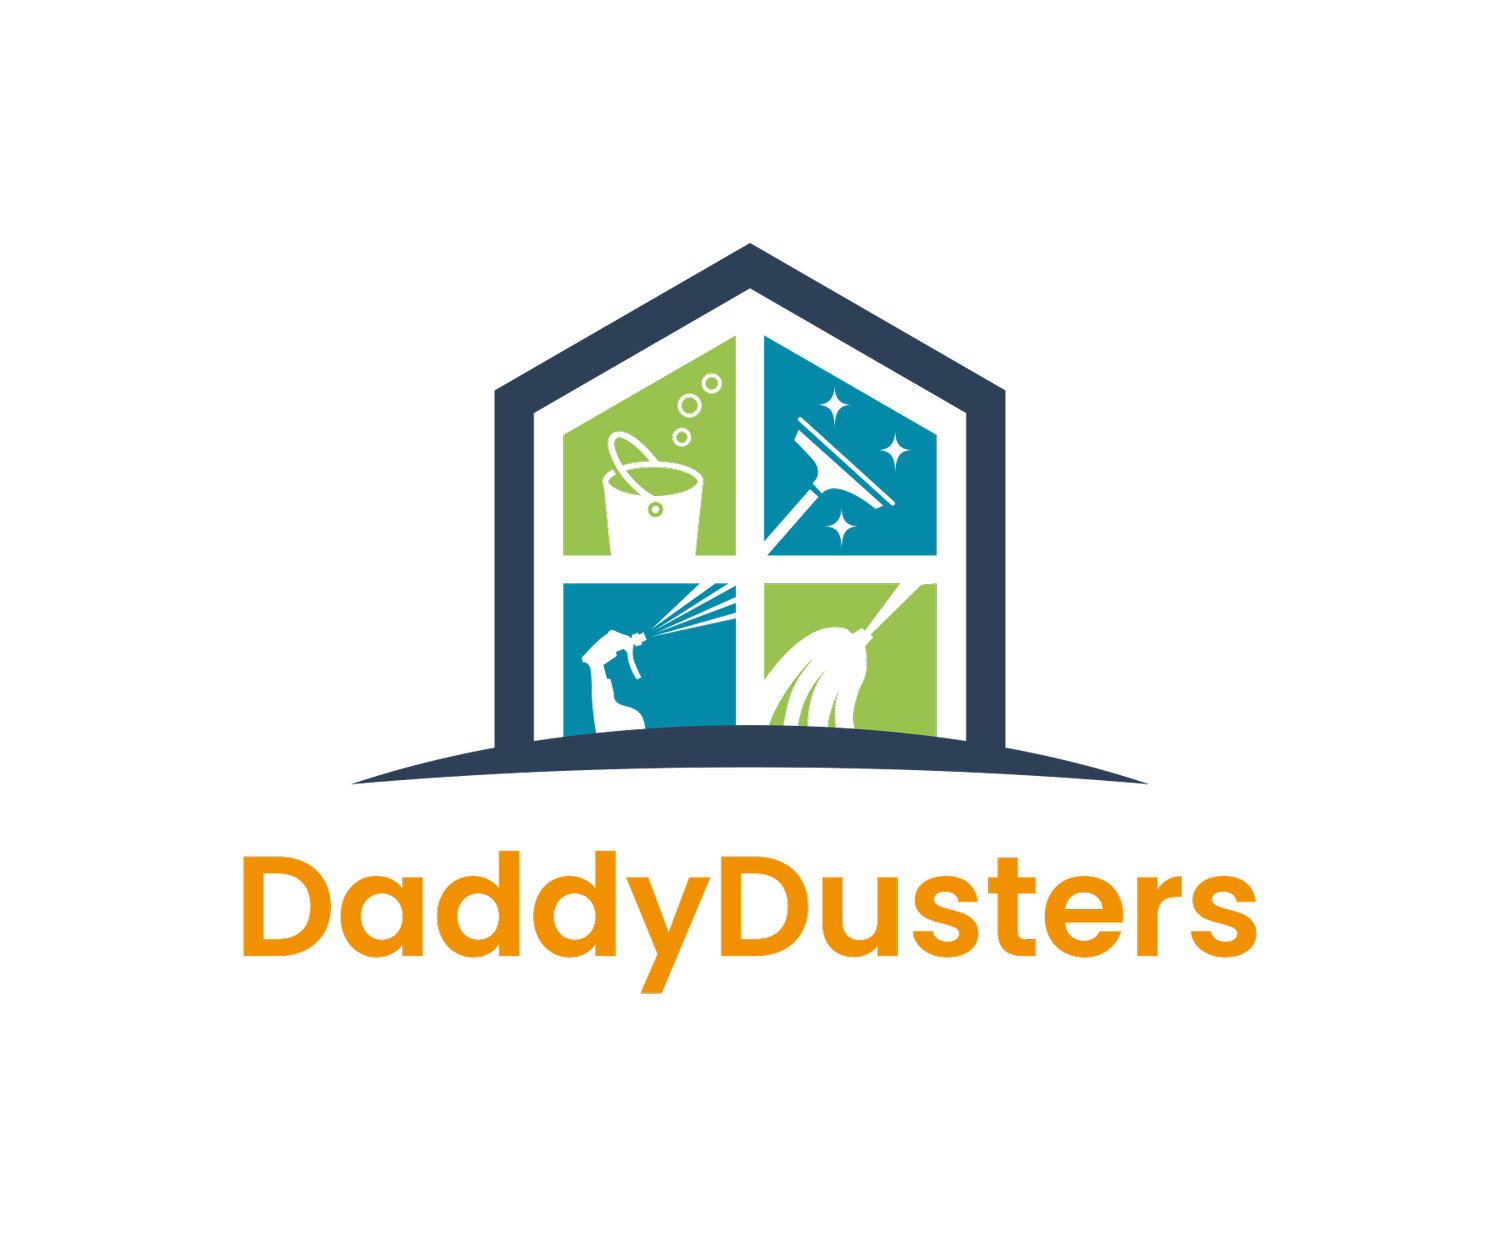 DaddyDusters